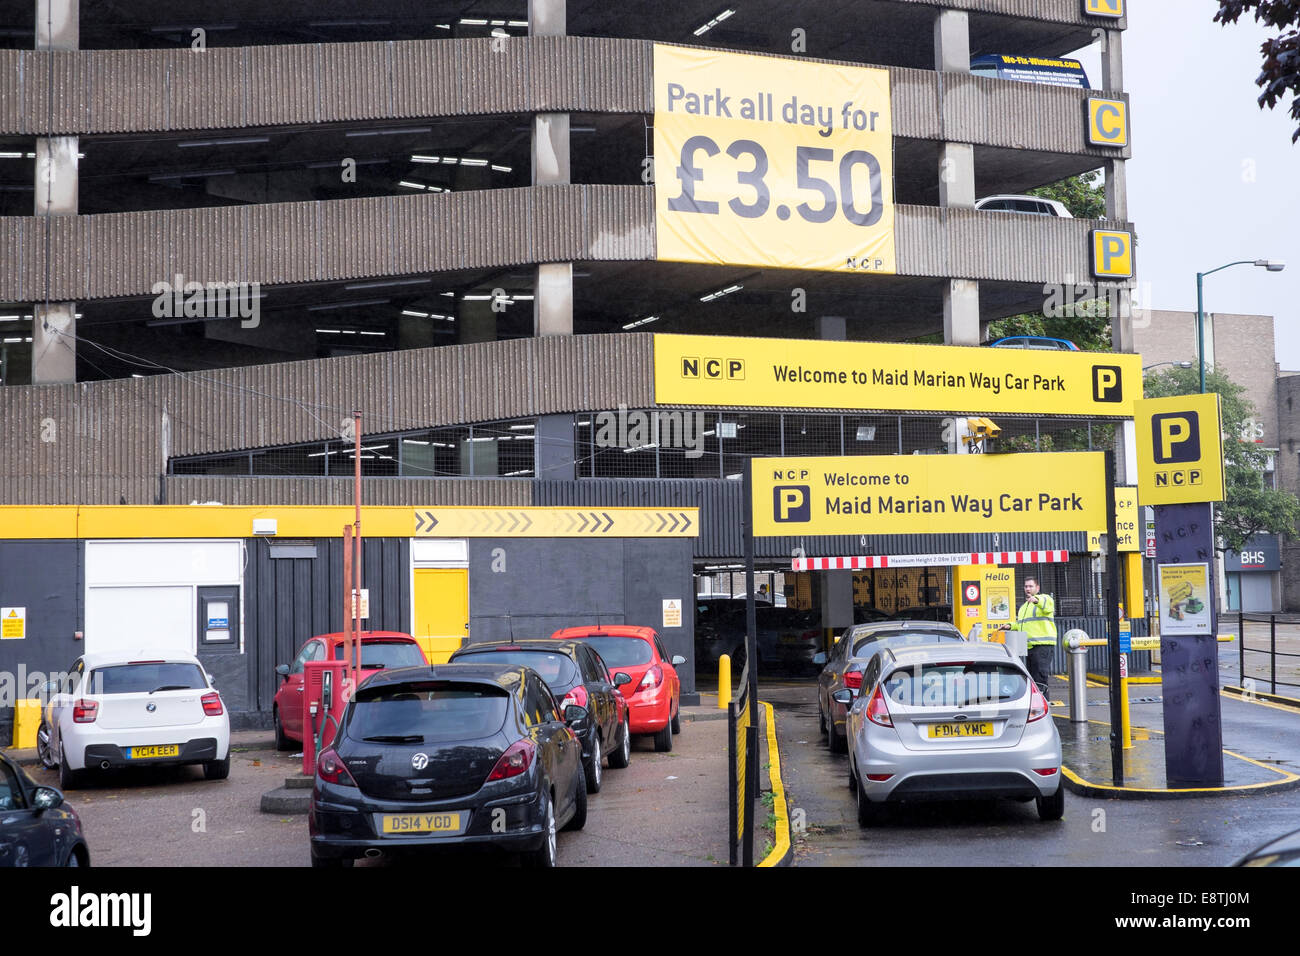 Un parking NCP tous les jours £3.50, Nottingham, UK Photo Stock - Alamy